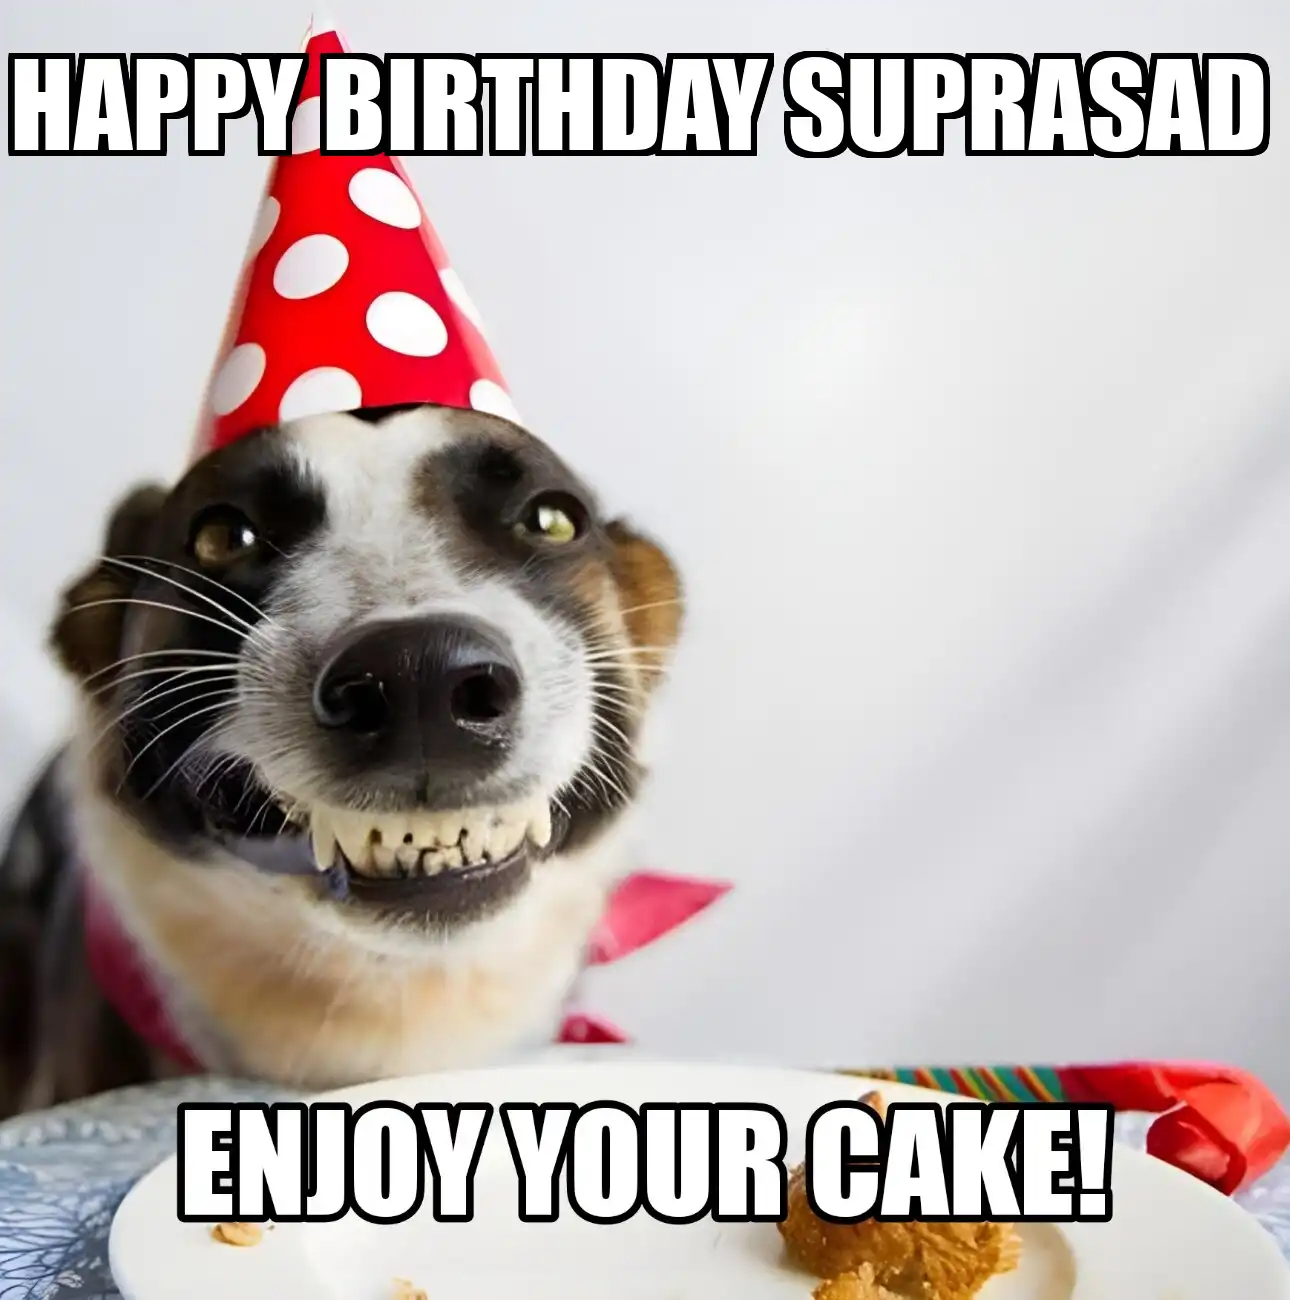 Happy Birthday Suprasad Enjoy Your Cake Dog Meme